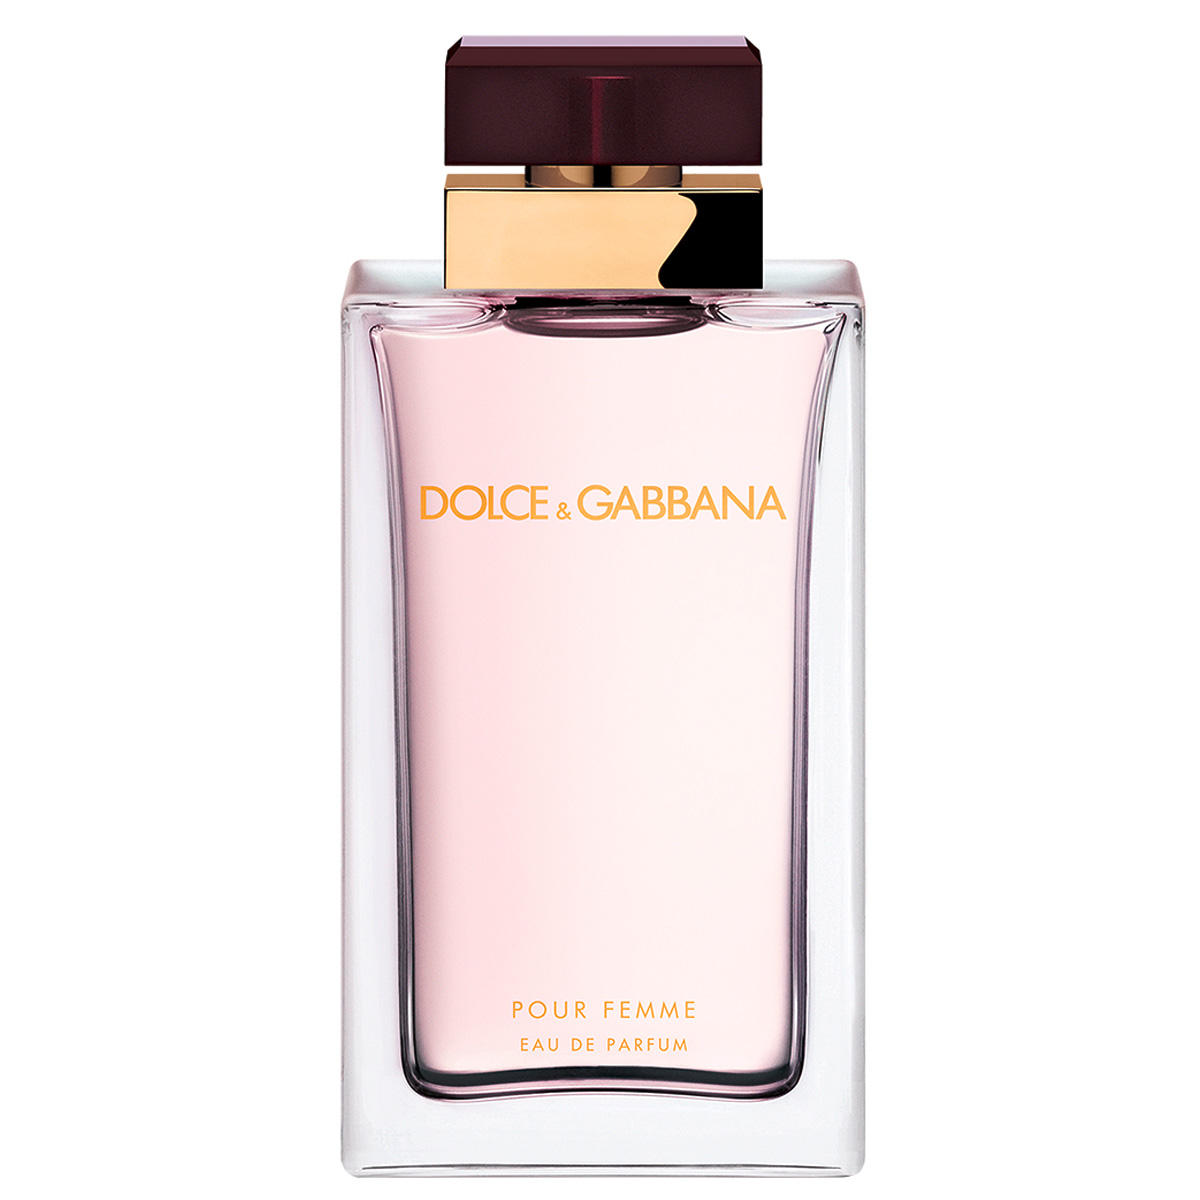 Dolce&Gabbana Pour Femme Eau de Parfum 100 ml - 1